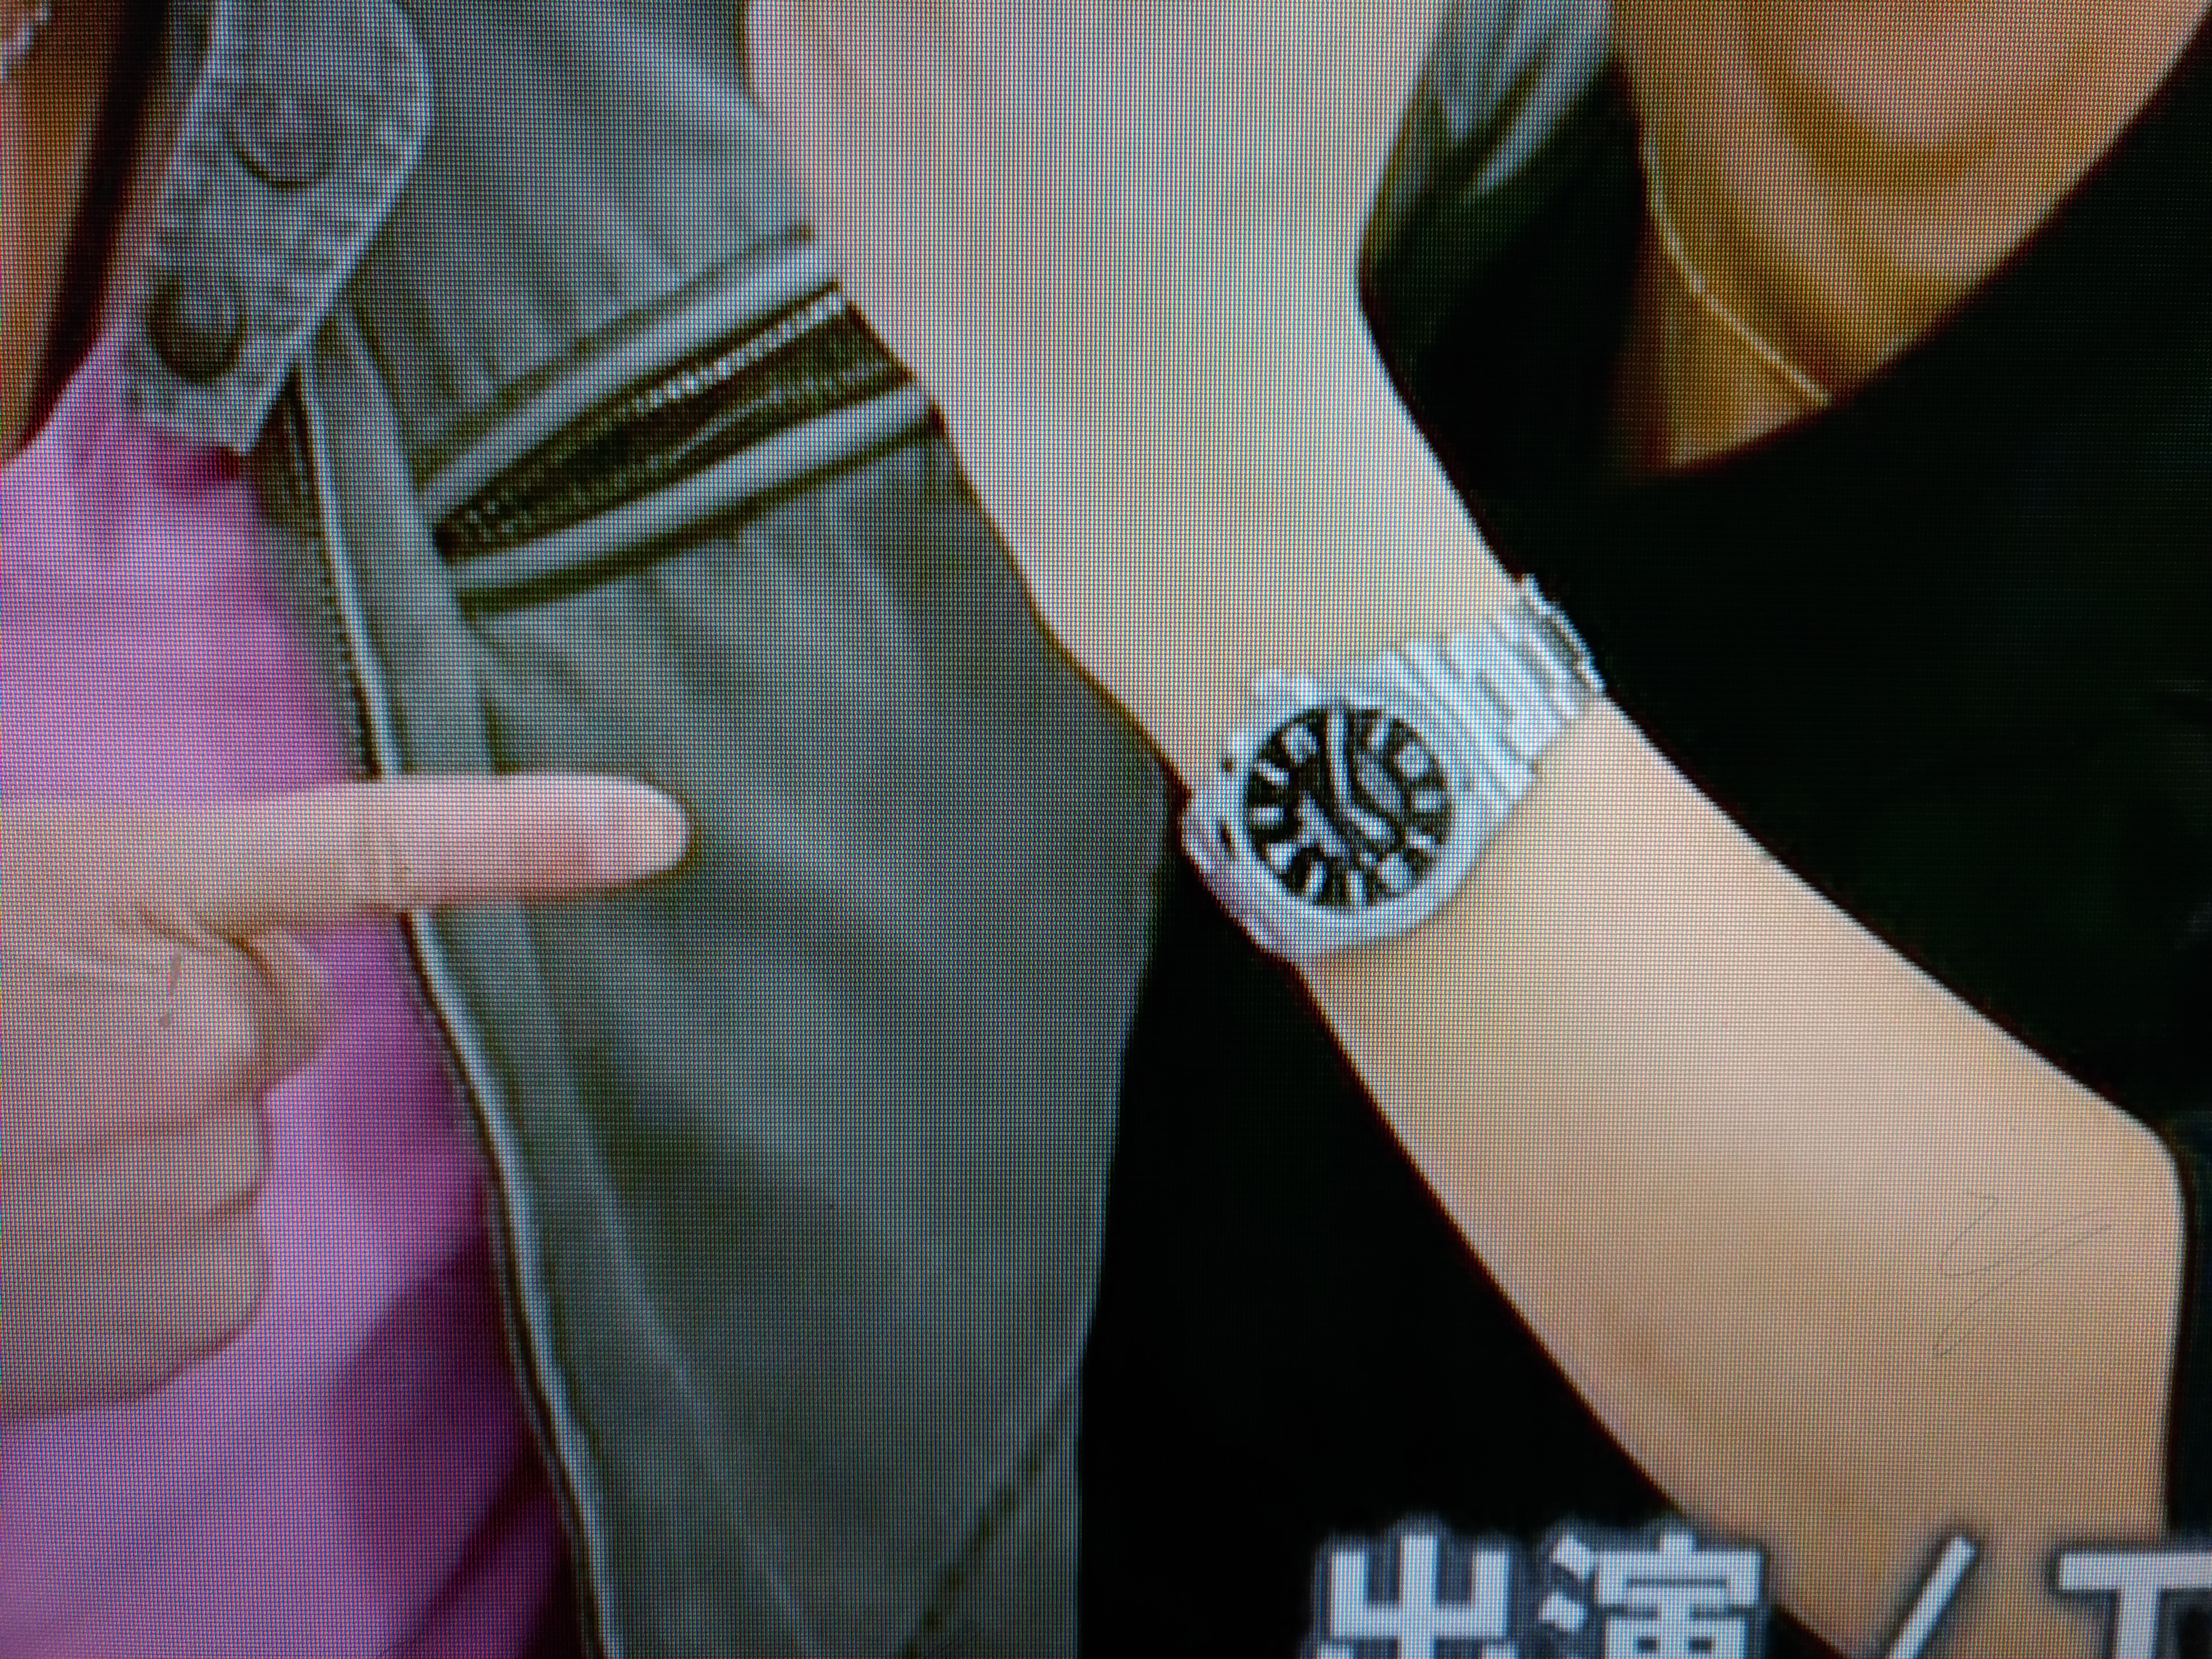 TOKIOカケルに見る40代の腕時計 長瀬智也さんはクロノグラフ好き 